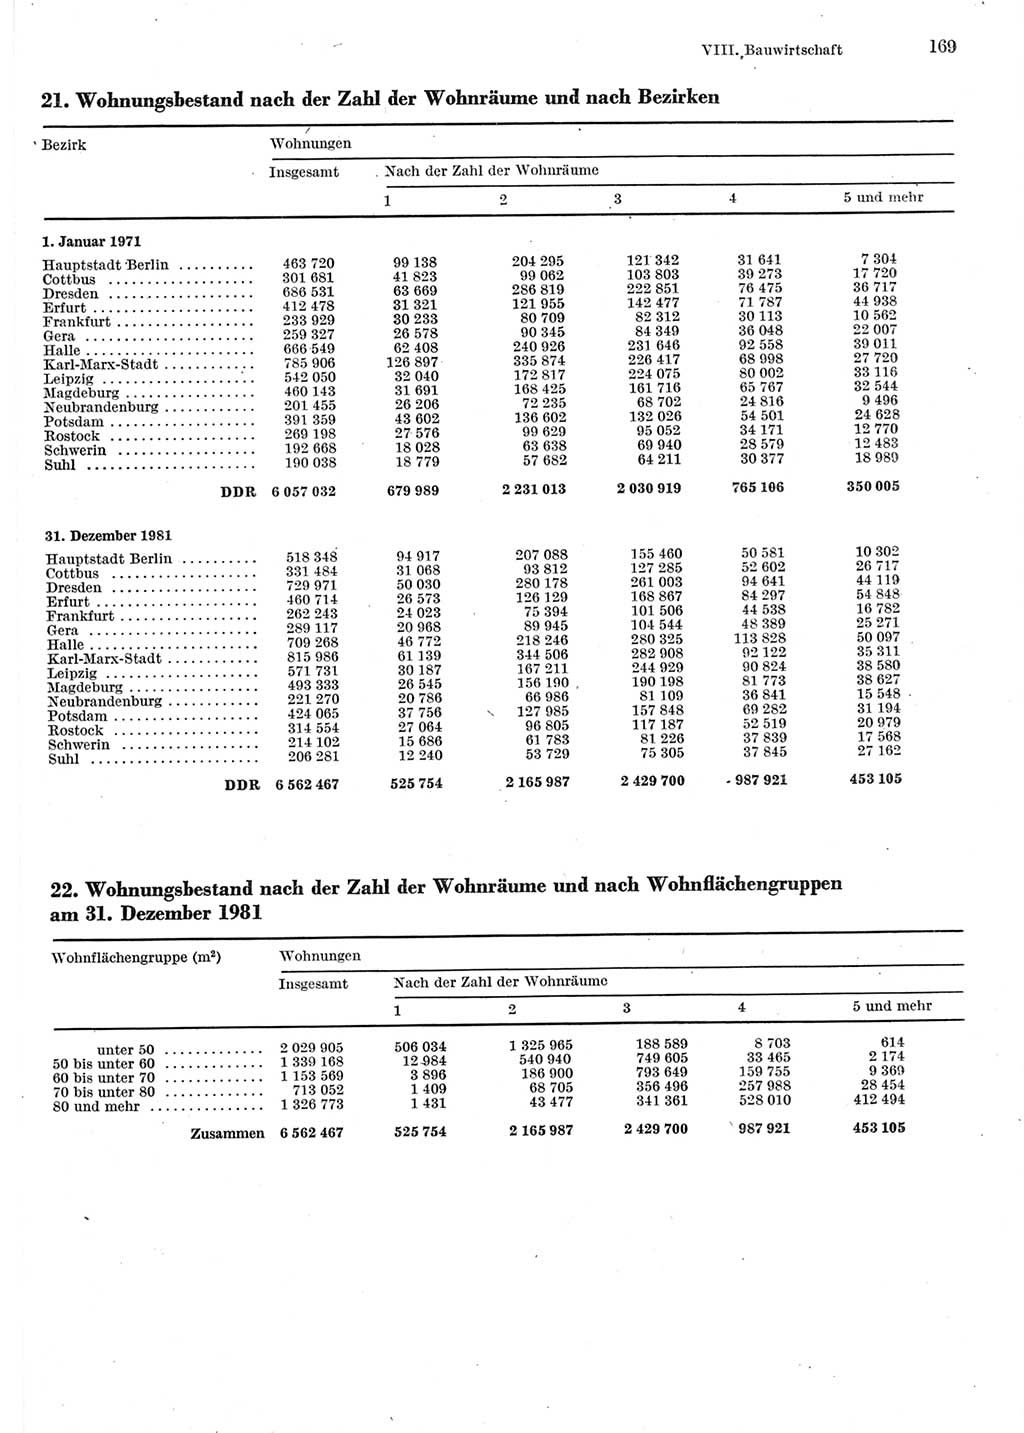 Statistisches Jahrbuch der Deutschen Demokratischen Republik (DDR) 1983, Seite 169 (Stat. Jb. DDR 1983, S. 169)